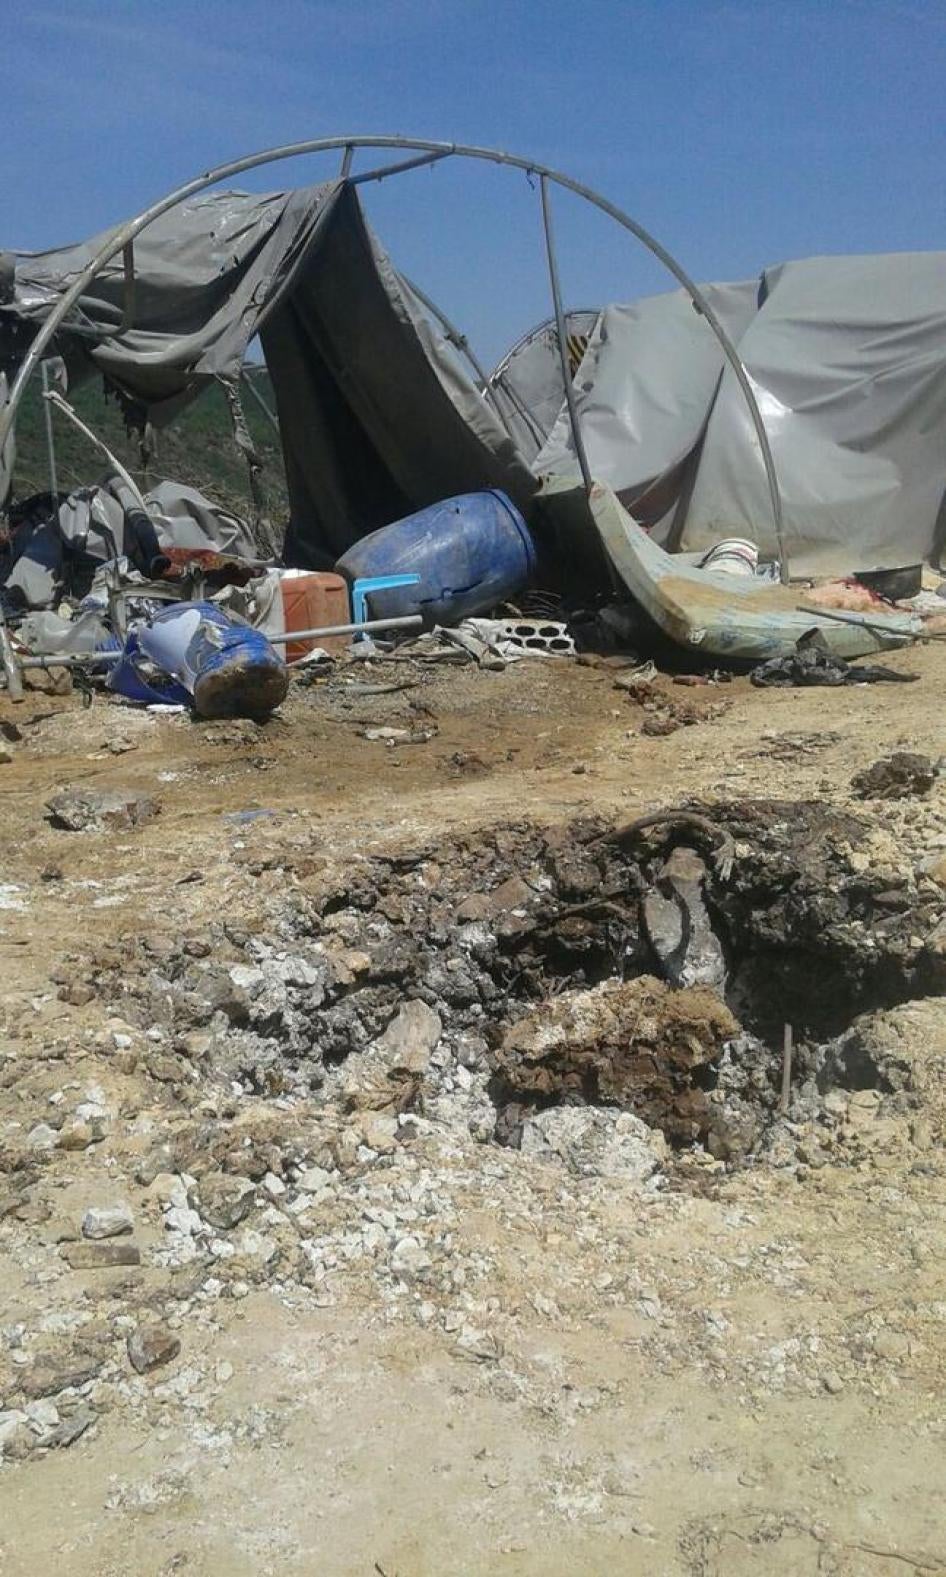 الحفرة والدمار اللذين سببتهما قوات الحكومة السورية لدى قصف مخيم خرماش للنازحين على الحدود التركية في سوريا في 15 أبريل/نيسان 2016.